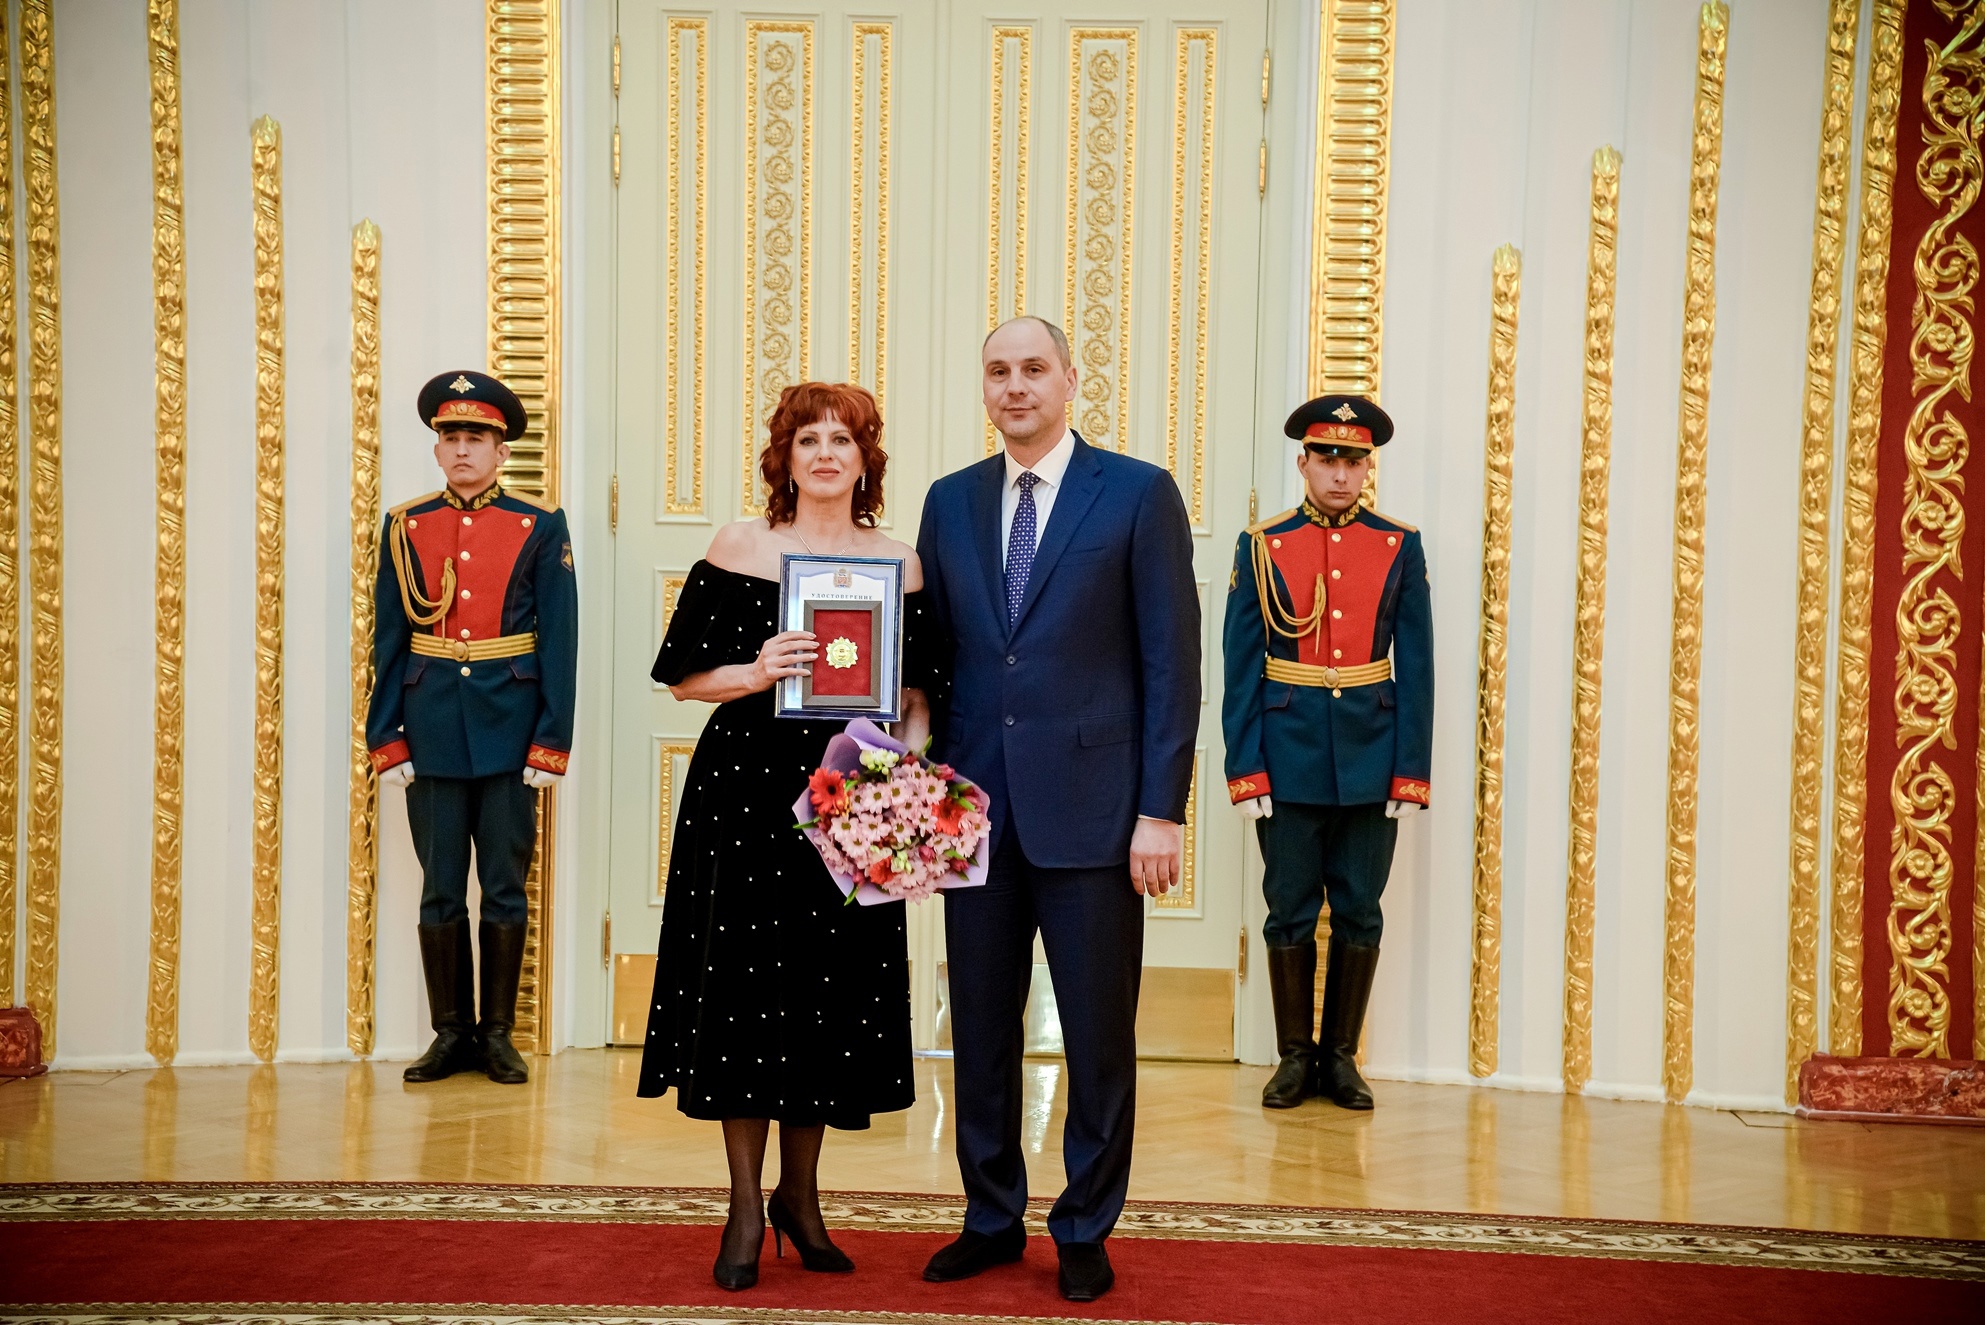 Оренбургский театр музыкальной комедии получил награду за особый вклад в поддержку бойцов-участников СВО